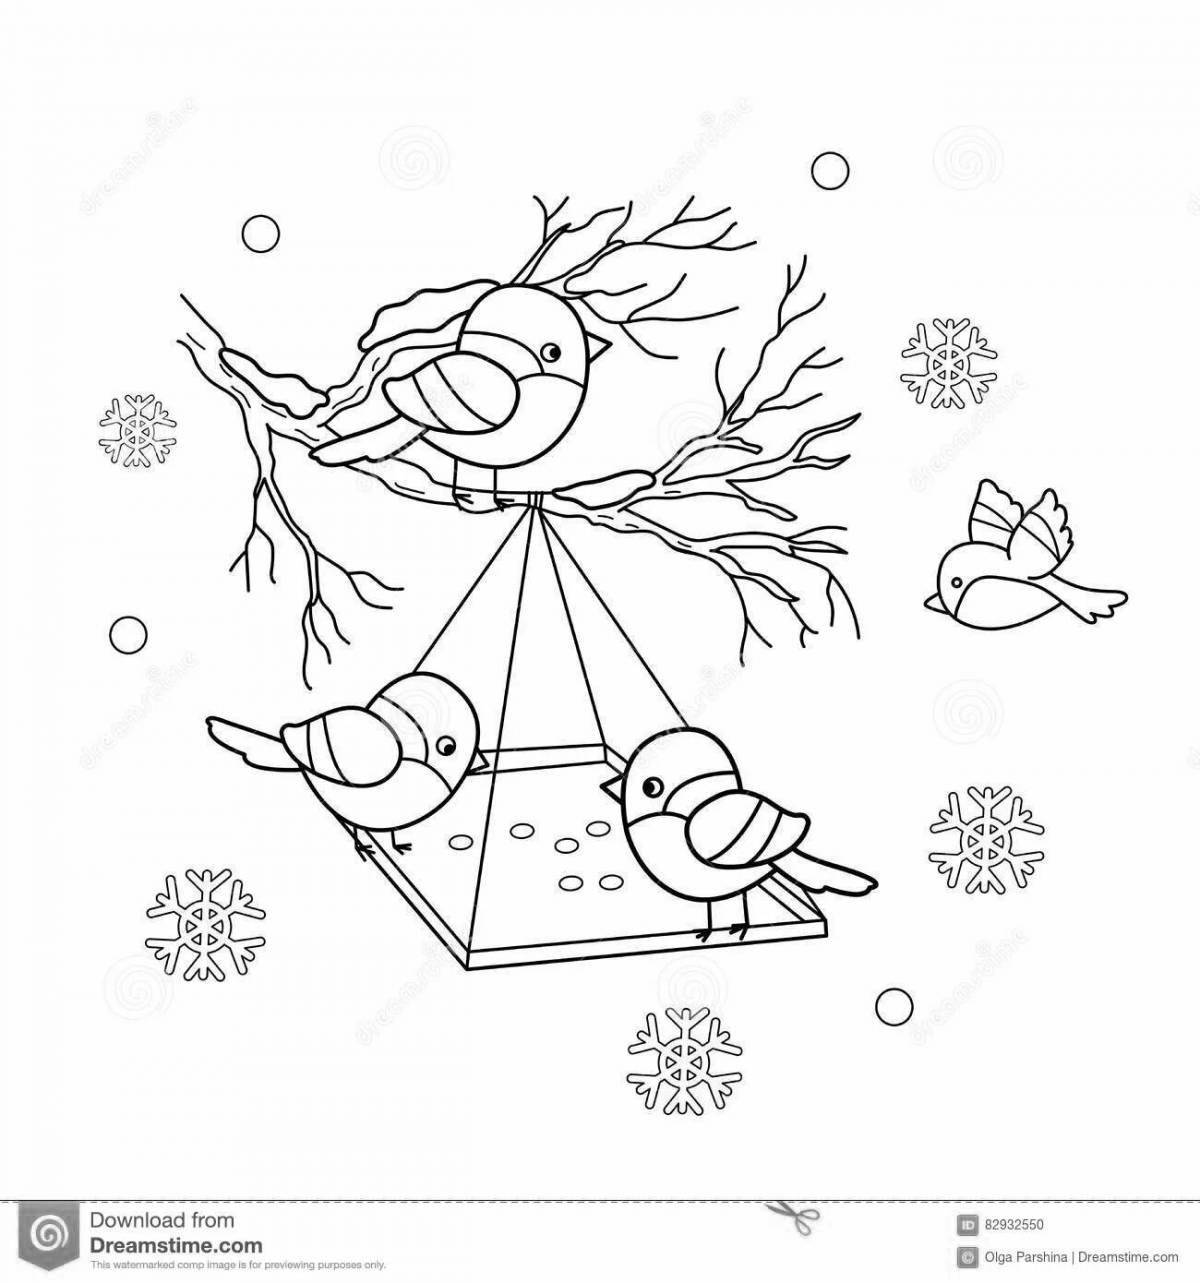 Увлекательный рисунок «корми птиц зимой» для детей 6-7 лет